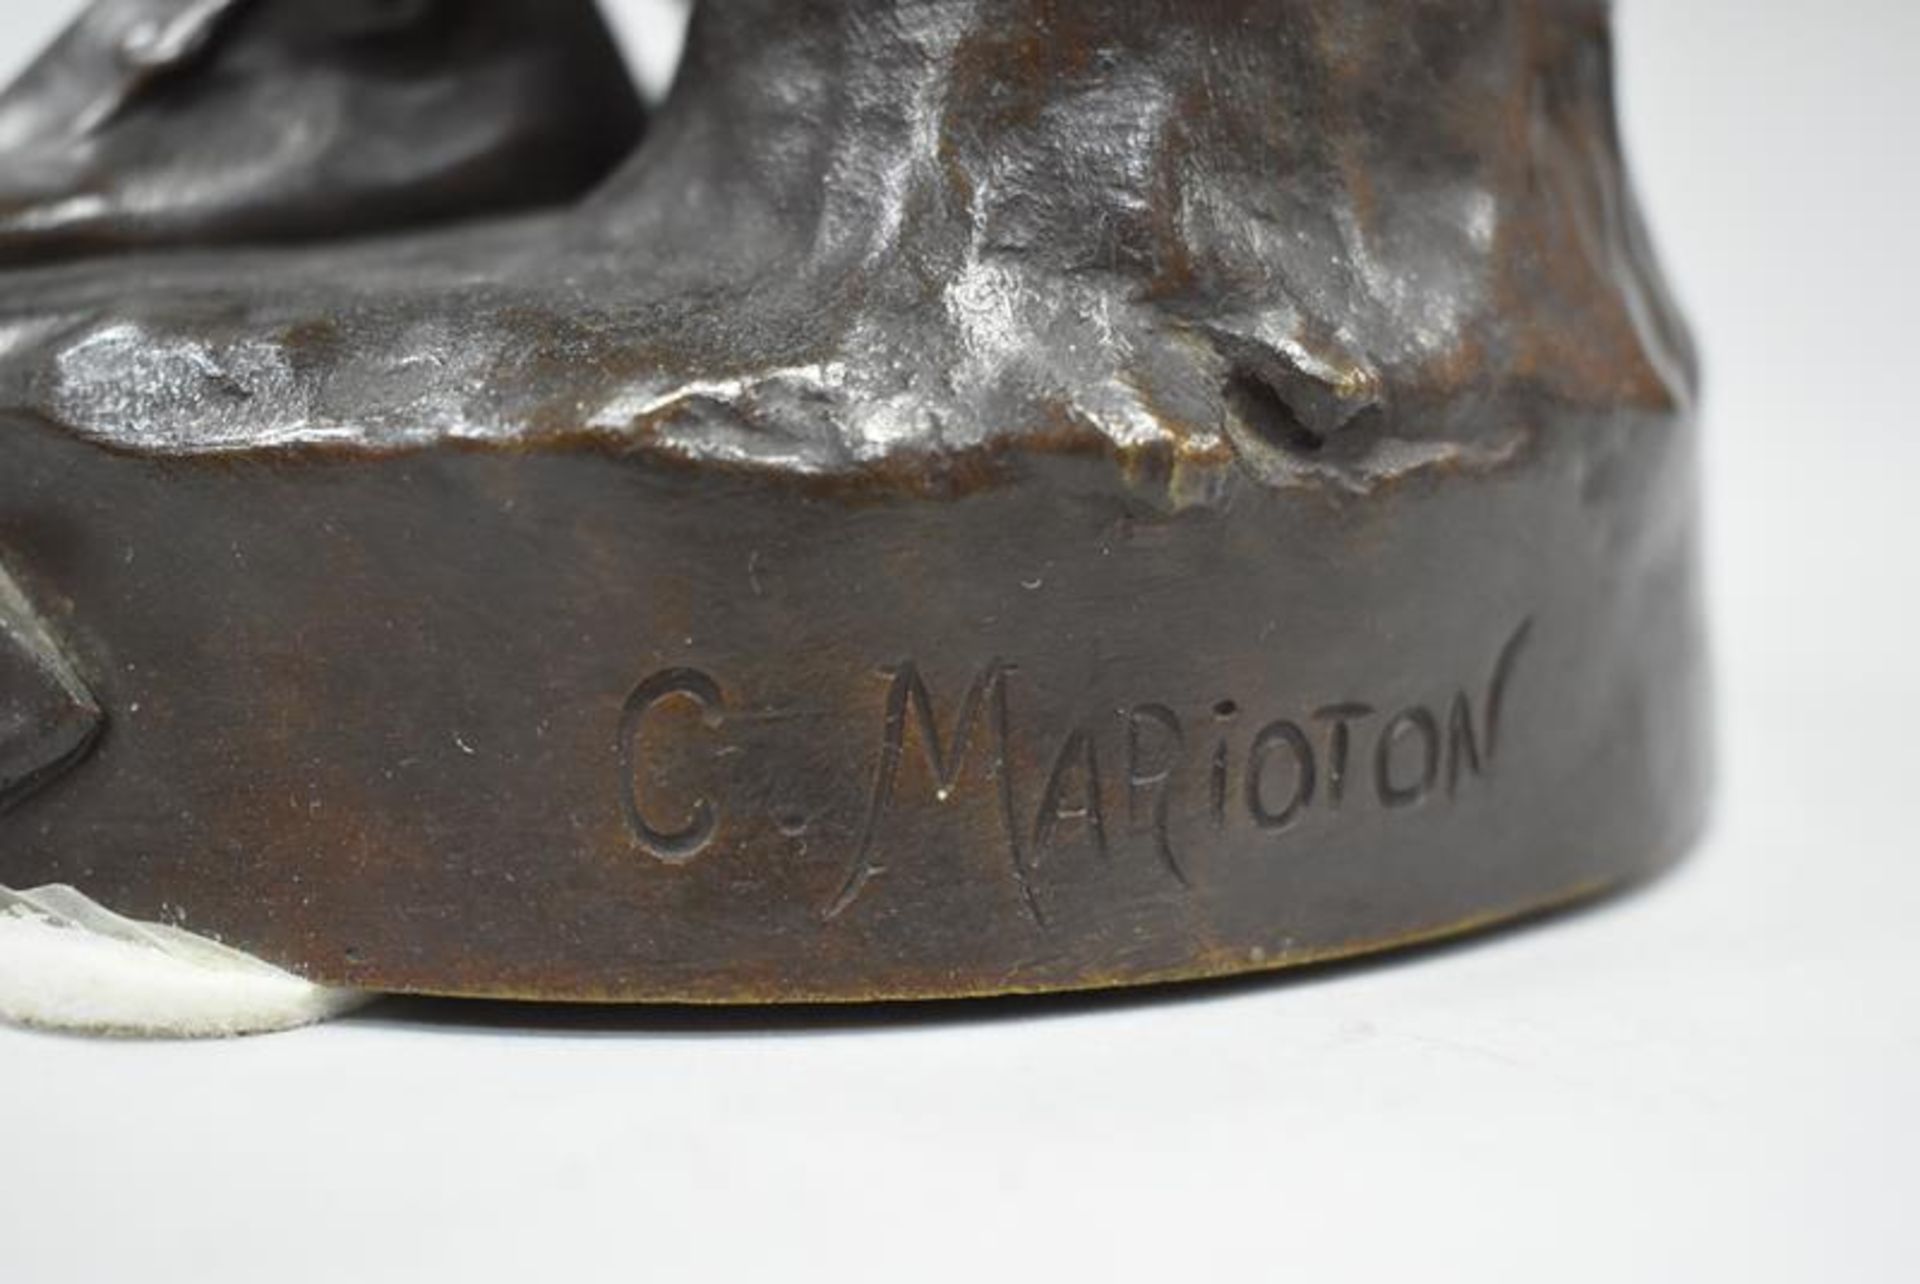 Claudius Marioton (1844-1919) "Le Travail"Mindestpreis 500Bezeichnung Claudius Marioton (1844- - Bild 2 aus 3